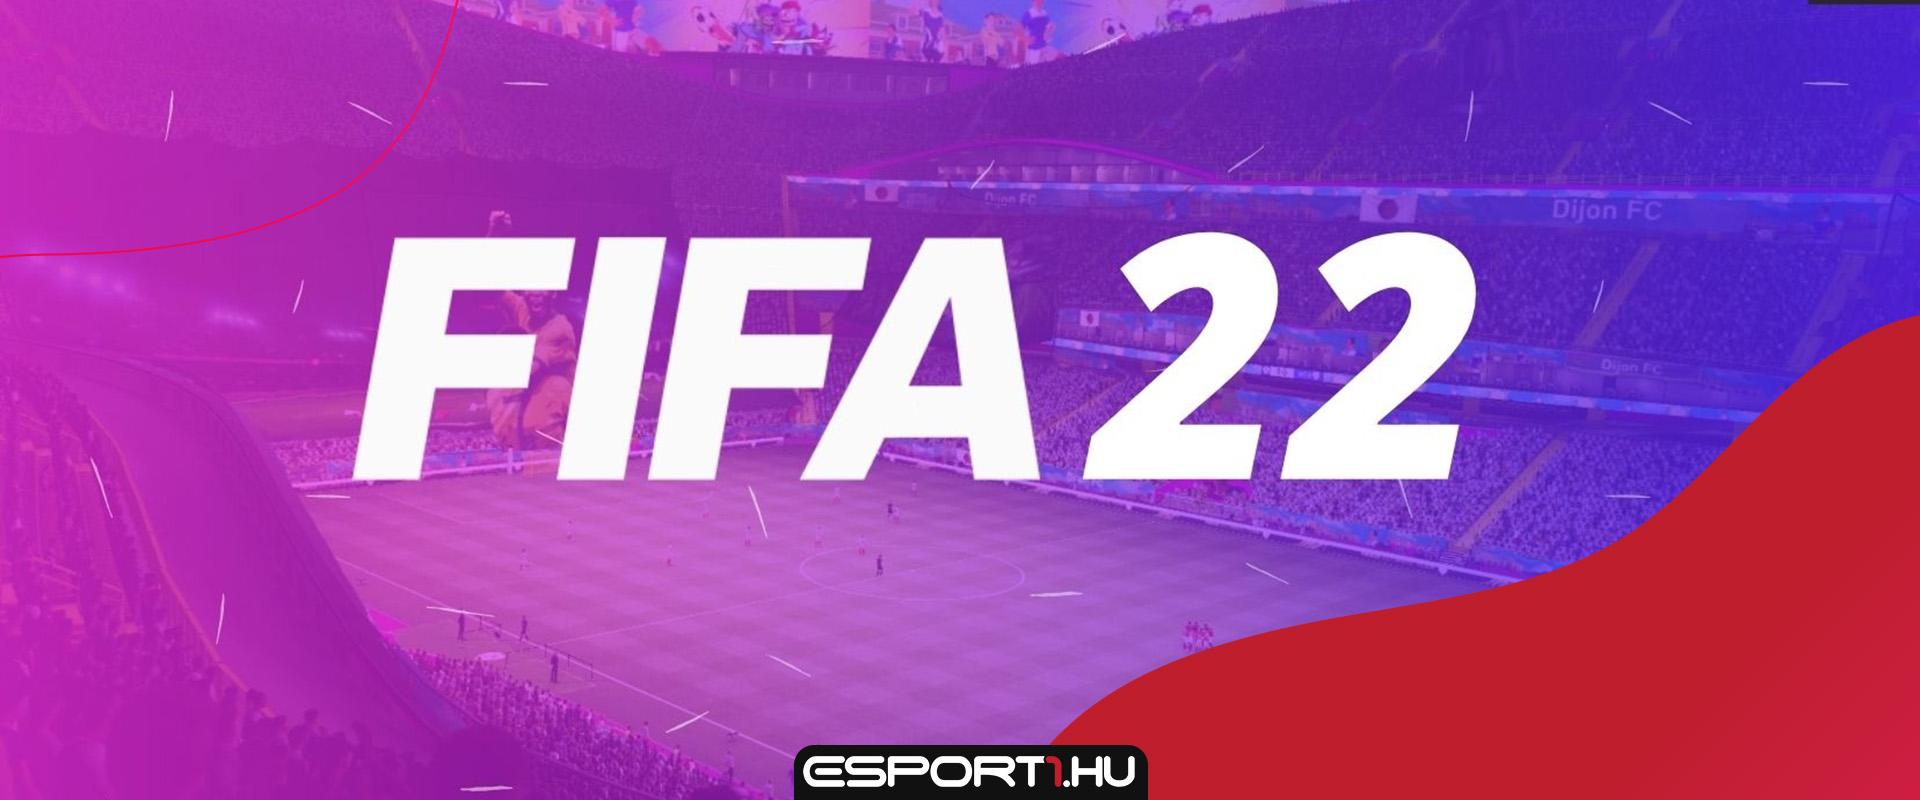 Így változik meg a játékosváltás és az egyik meta felállás a FIFA 22-ben